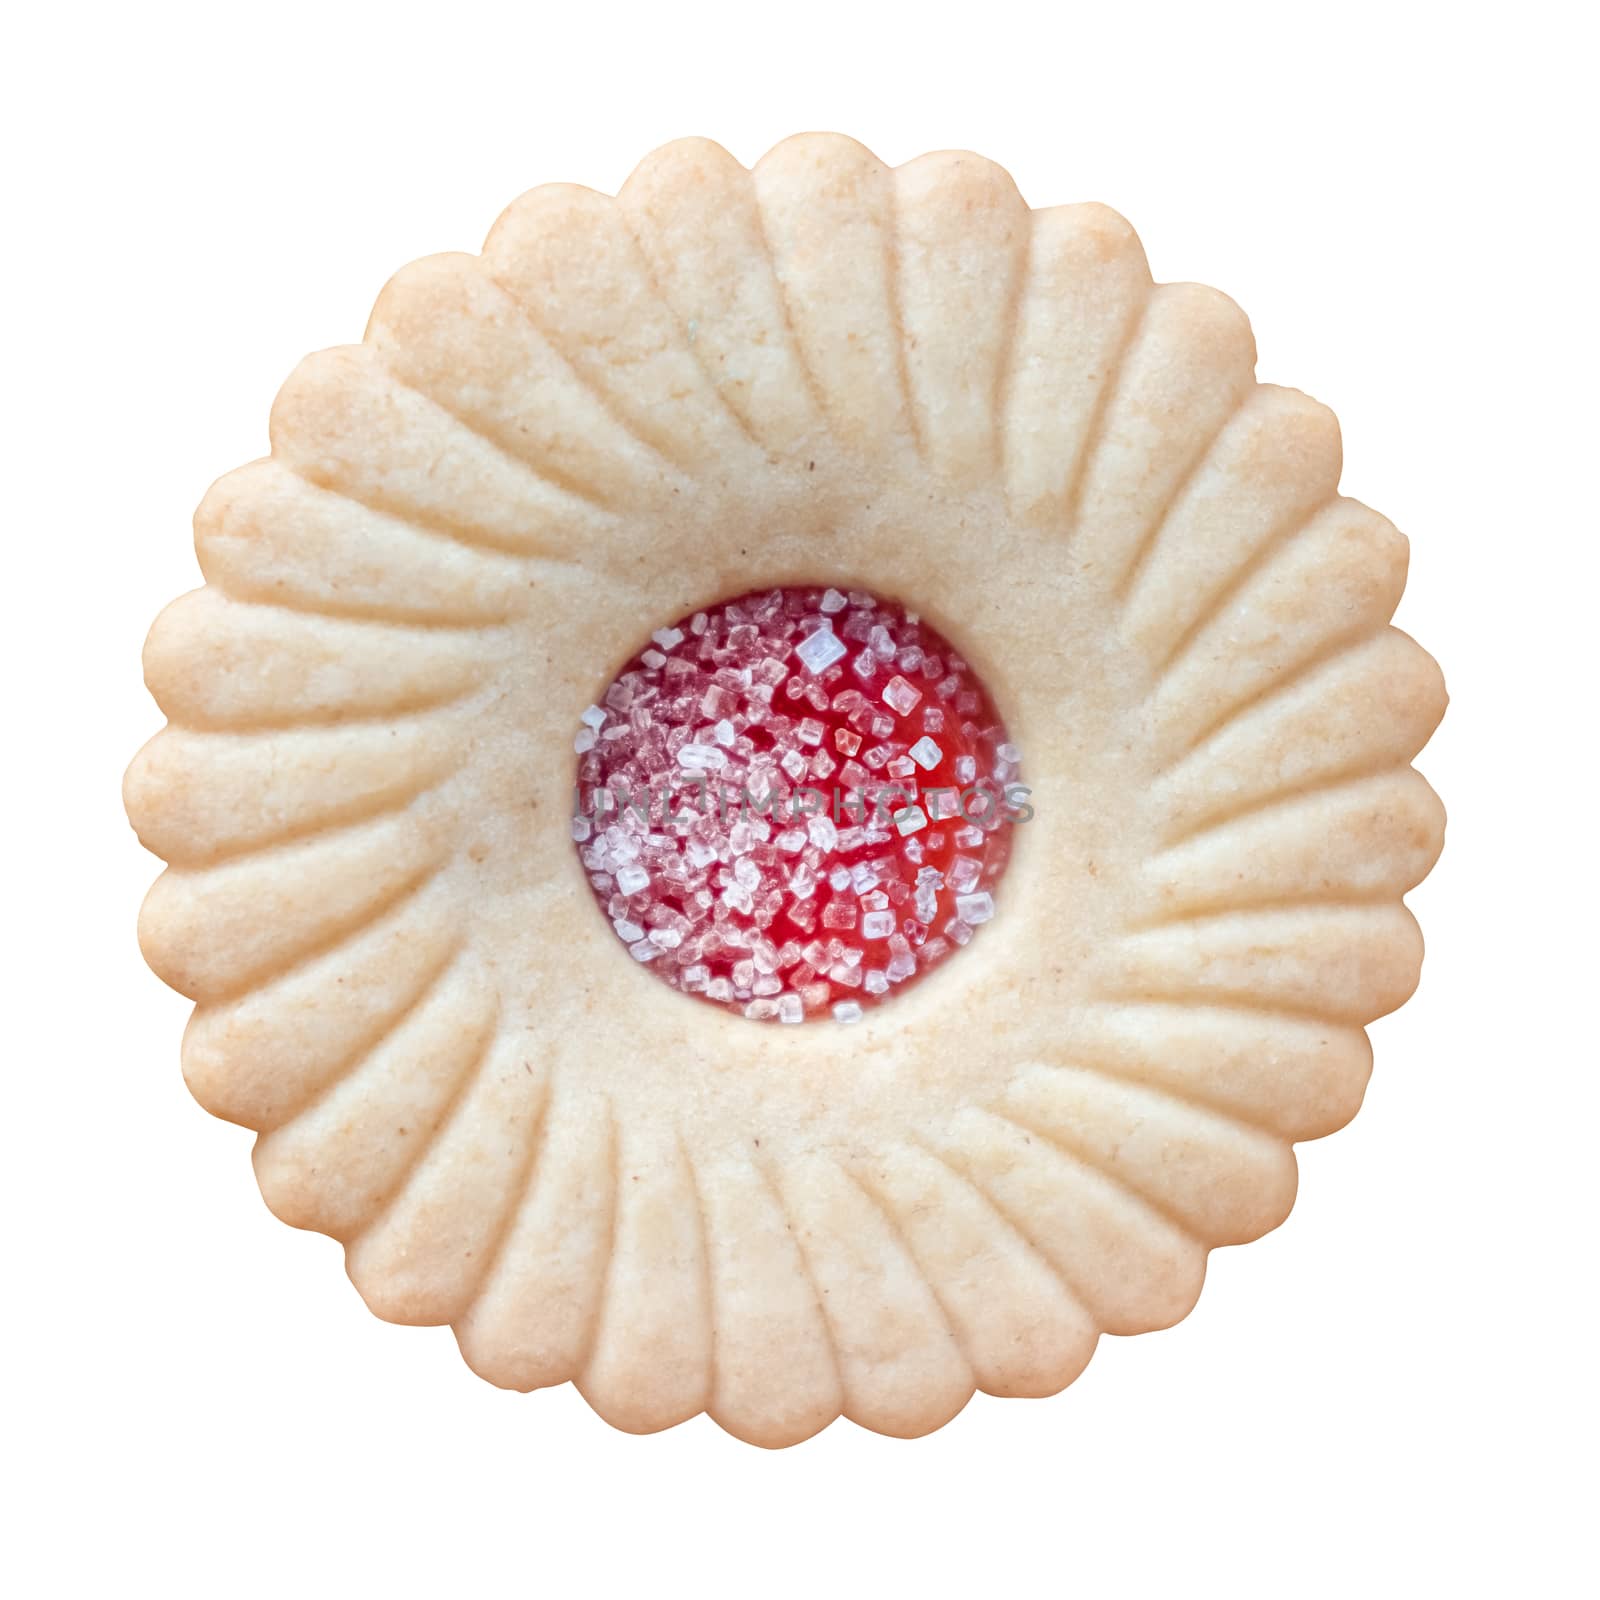 Retro Vintage British Biscuit by mrdoomits